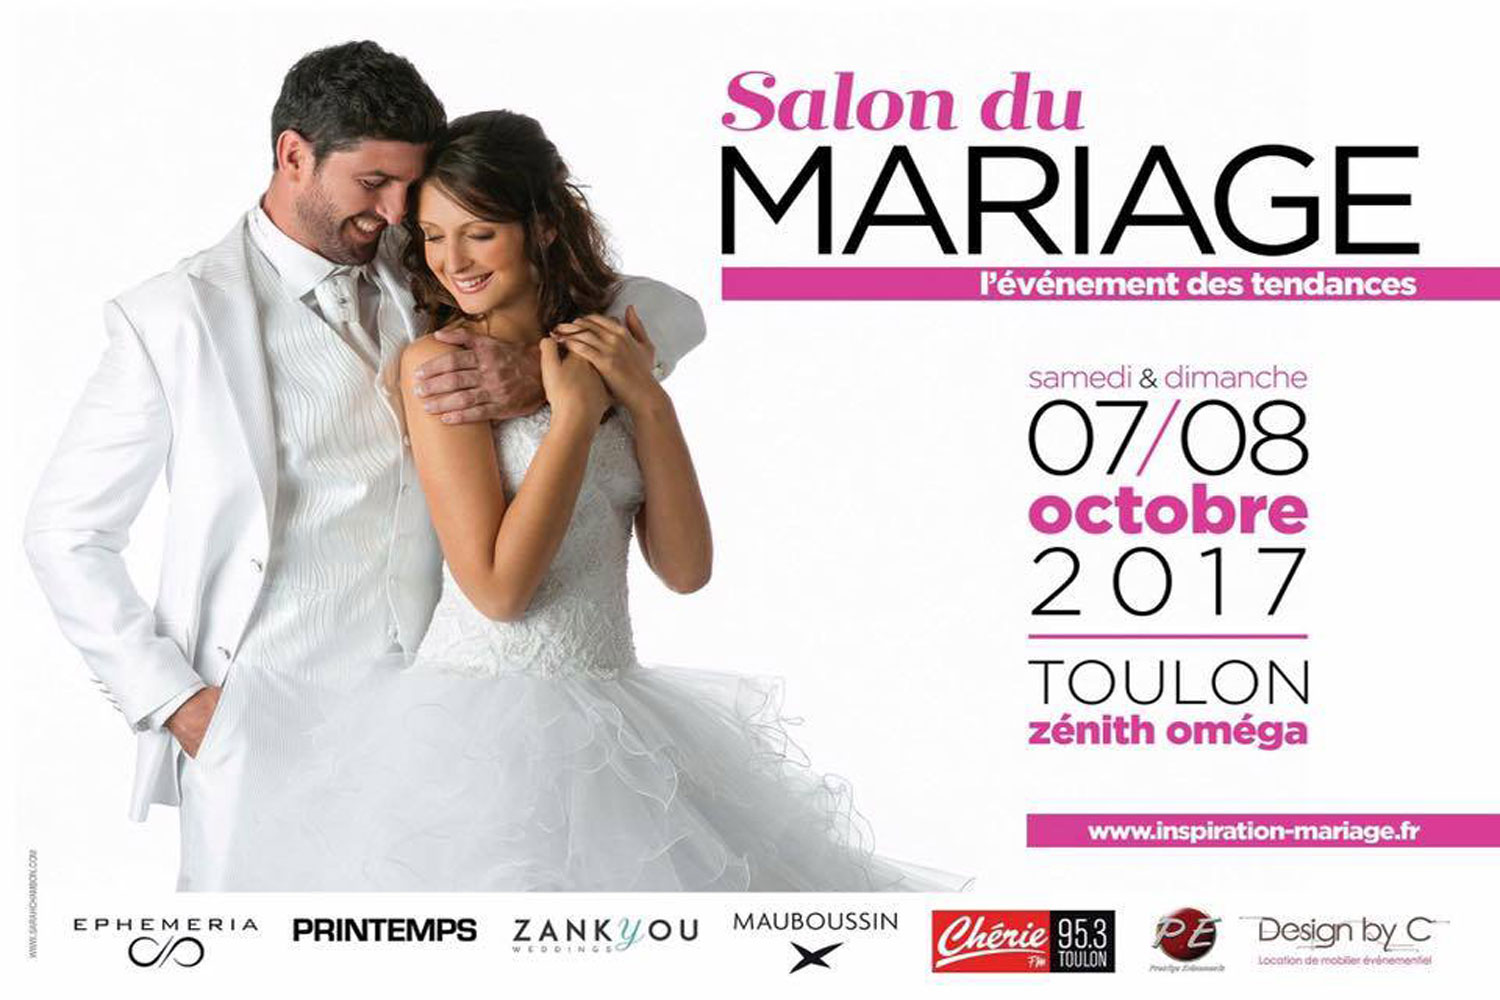 Retrouvez Manue-Reva au Salon du Mariage de Toulon